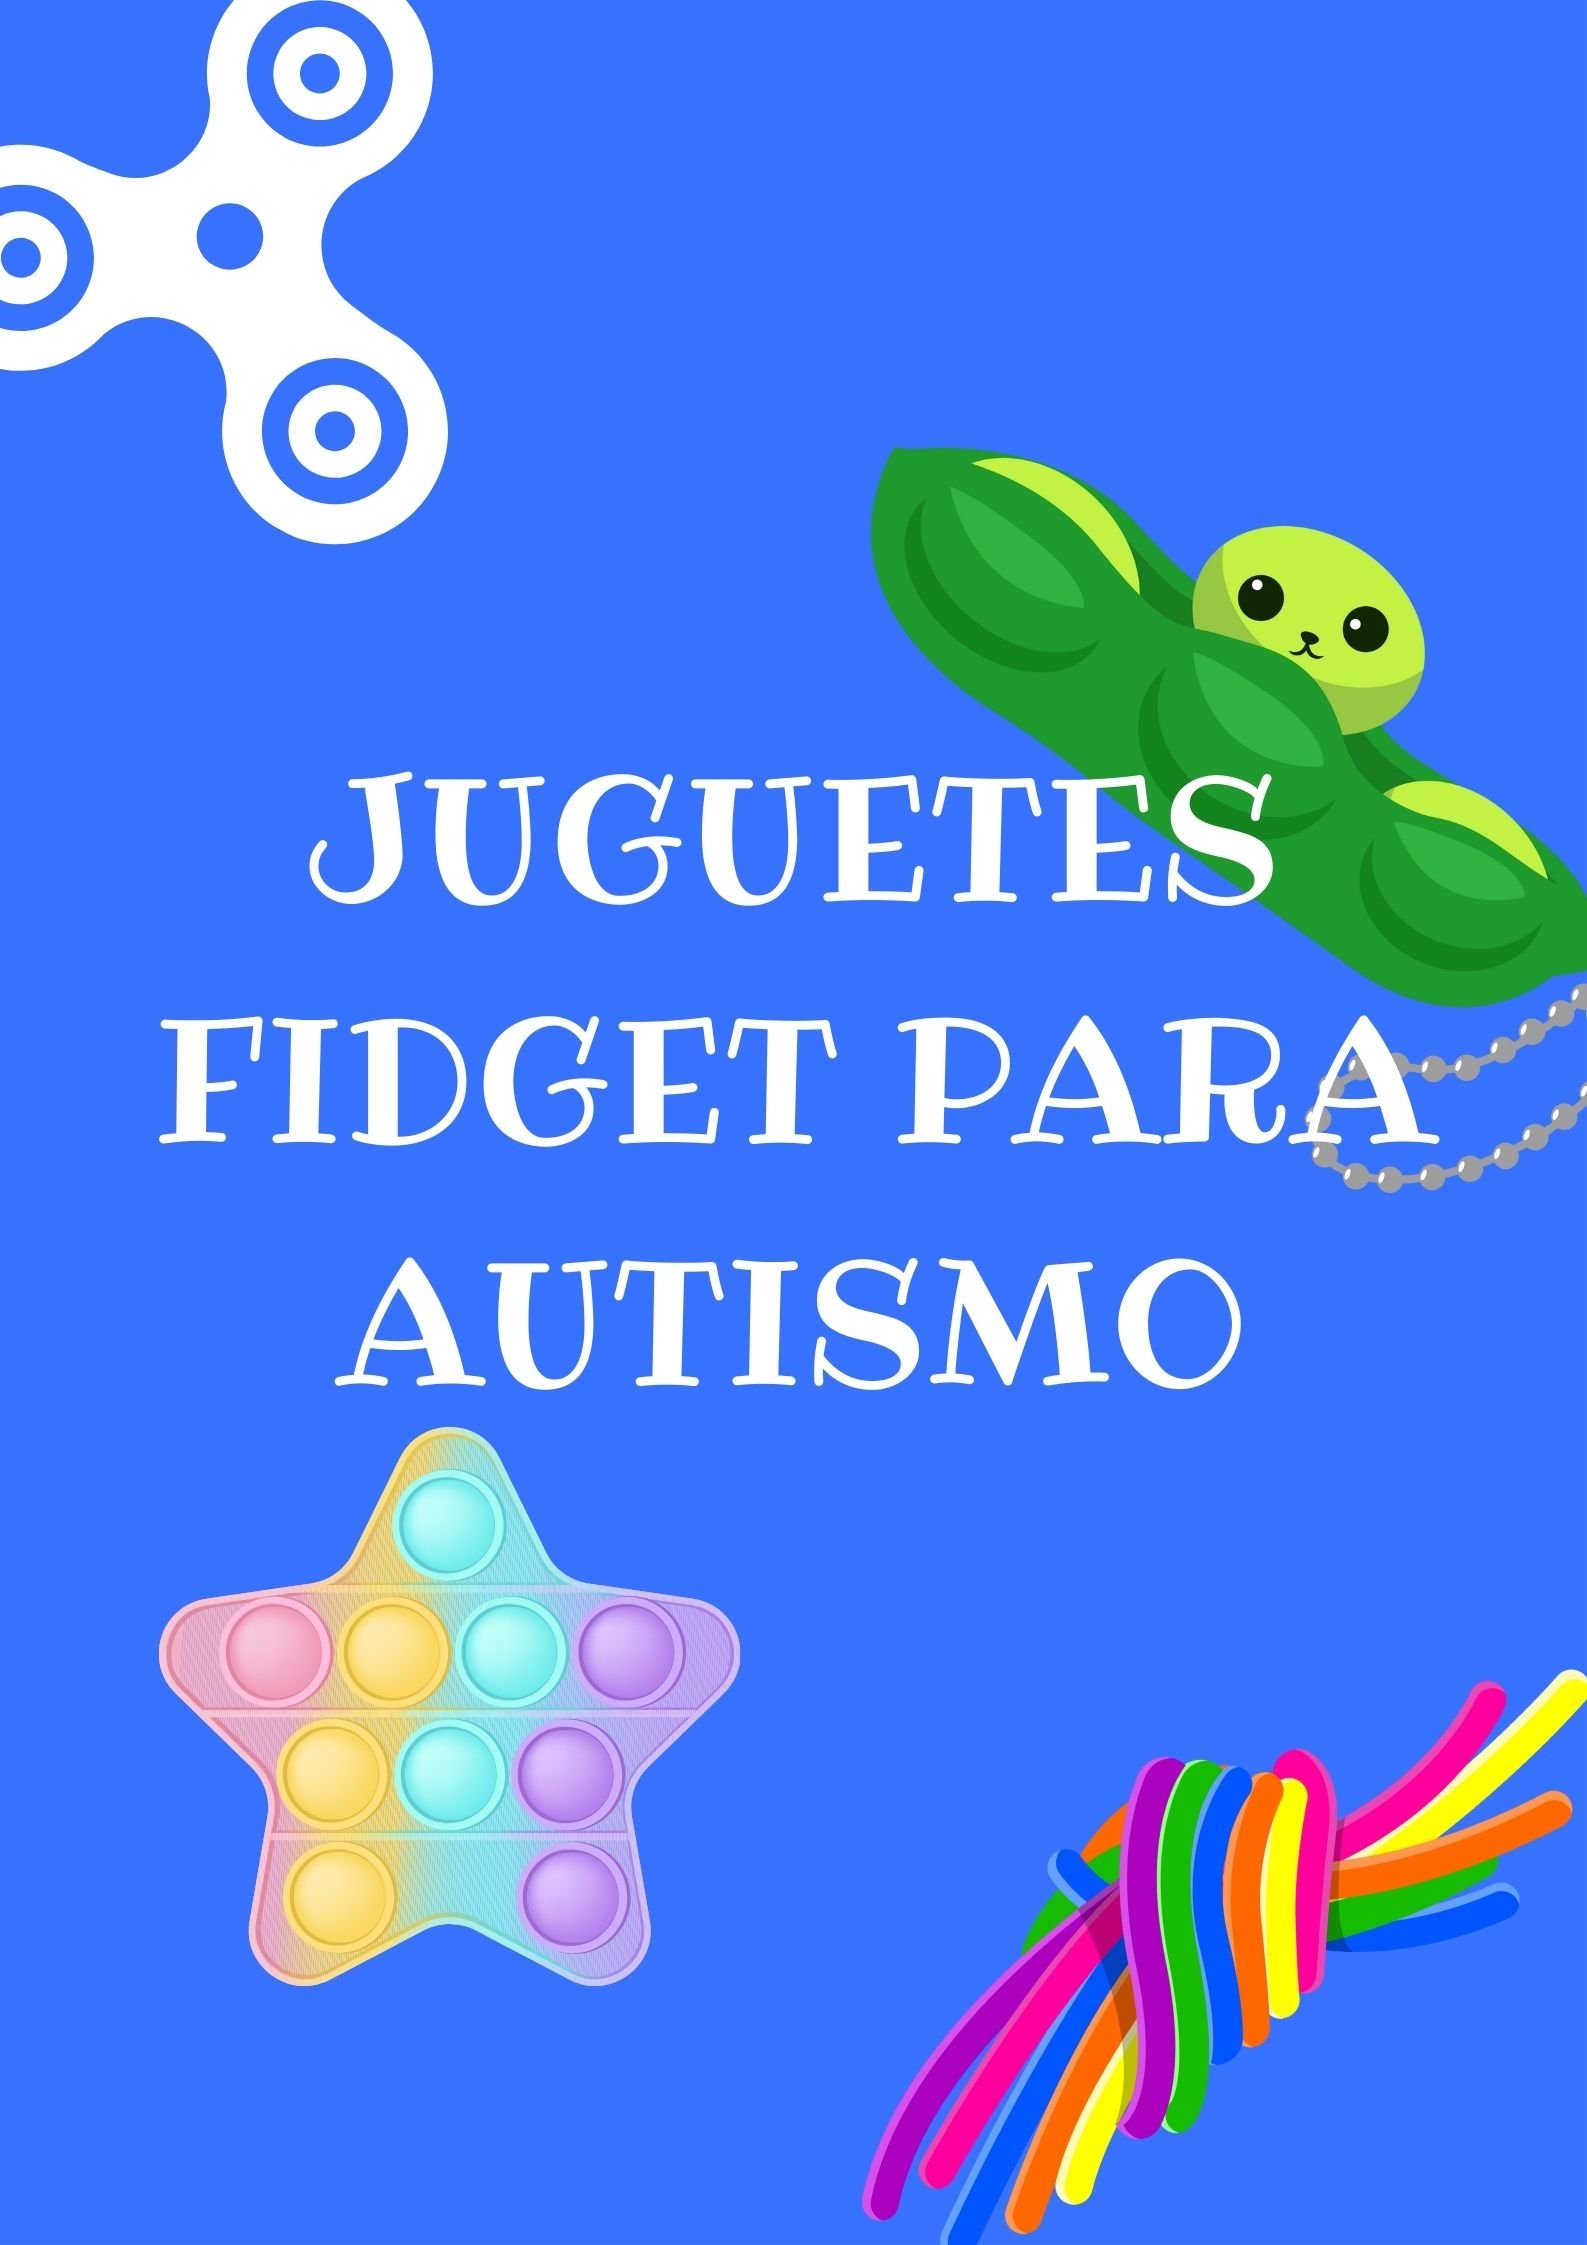 juguetes fidget para autismo